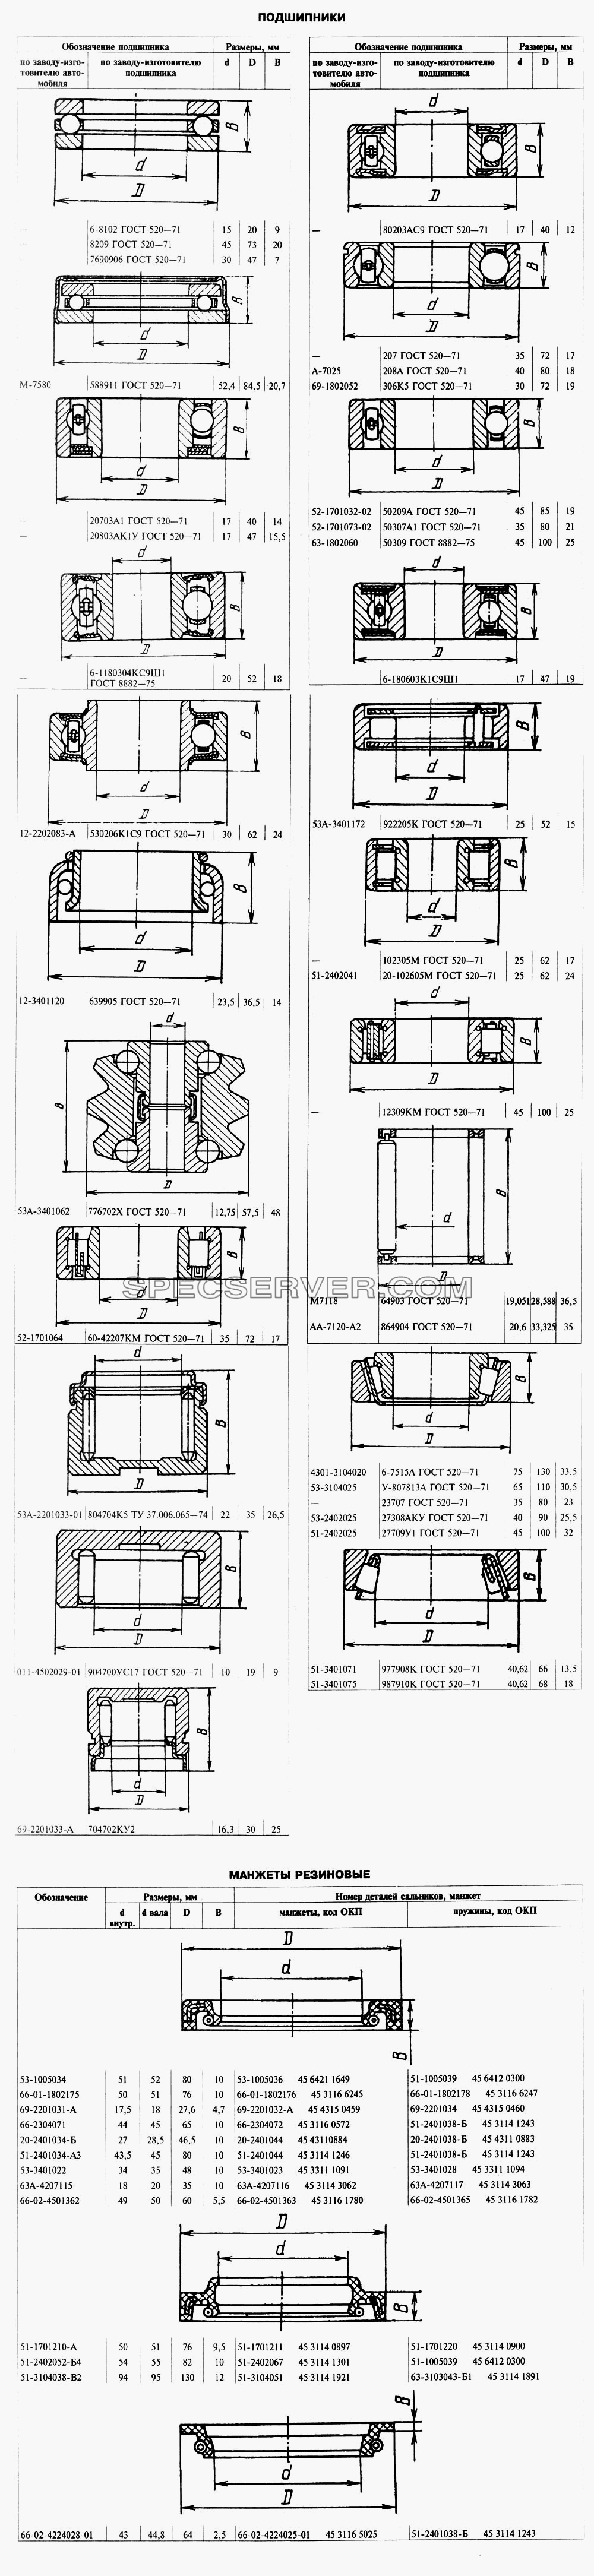 Подшипники и манжеты для ГАЗ-66 (Каталога 1996 г.) (список запасных частей)